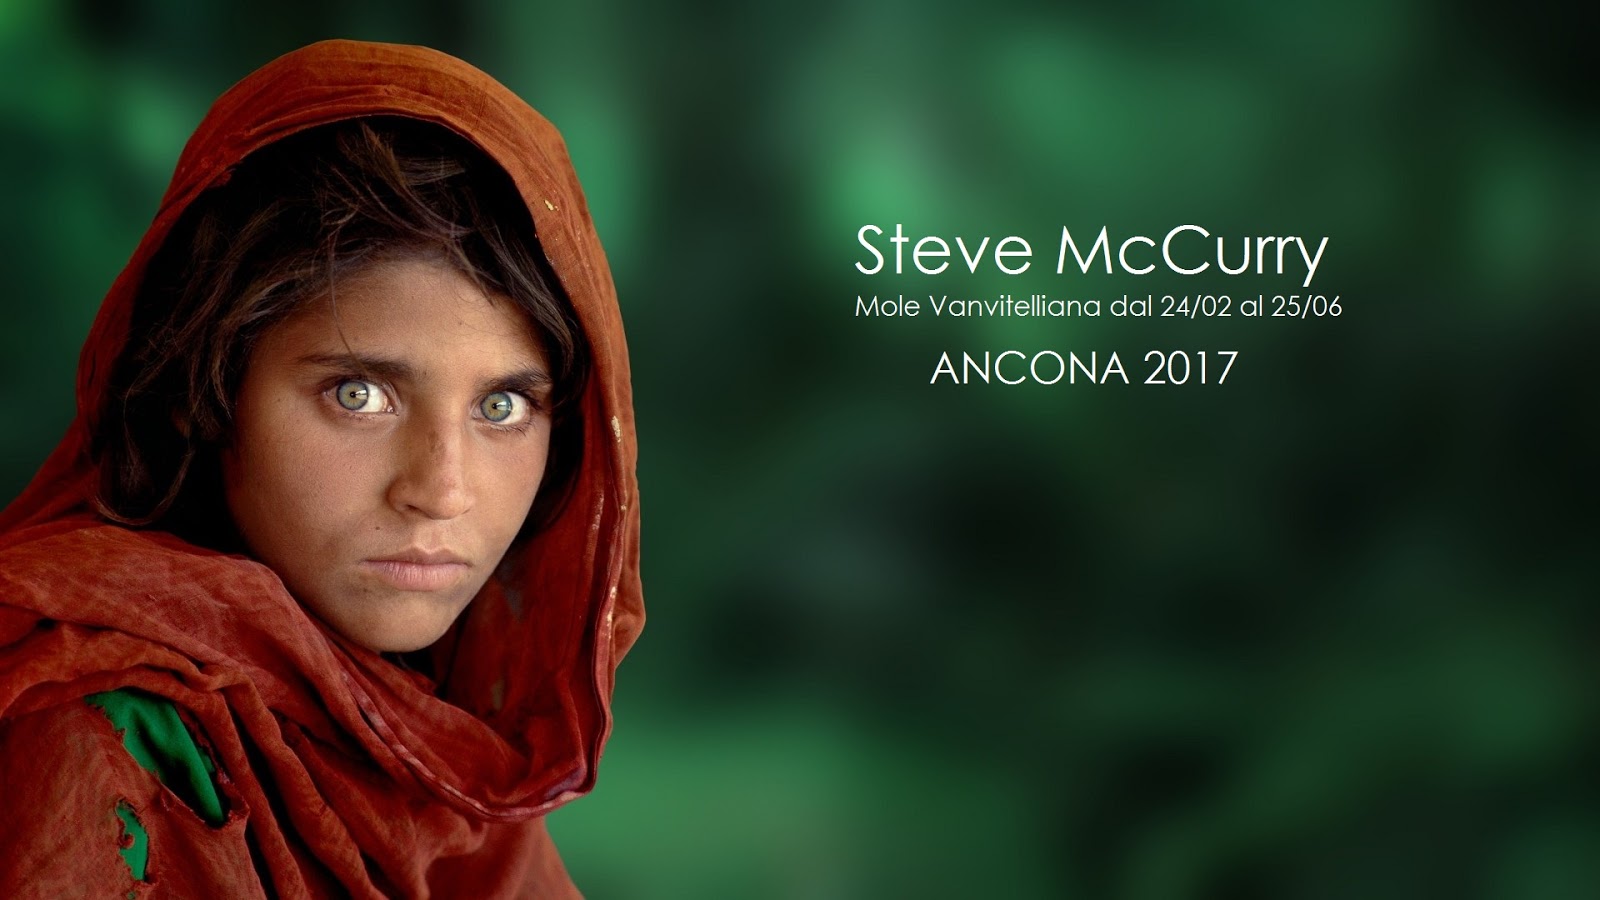 La mole Vanvitelliana e la mostra di Steve McCurry